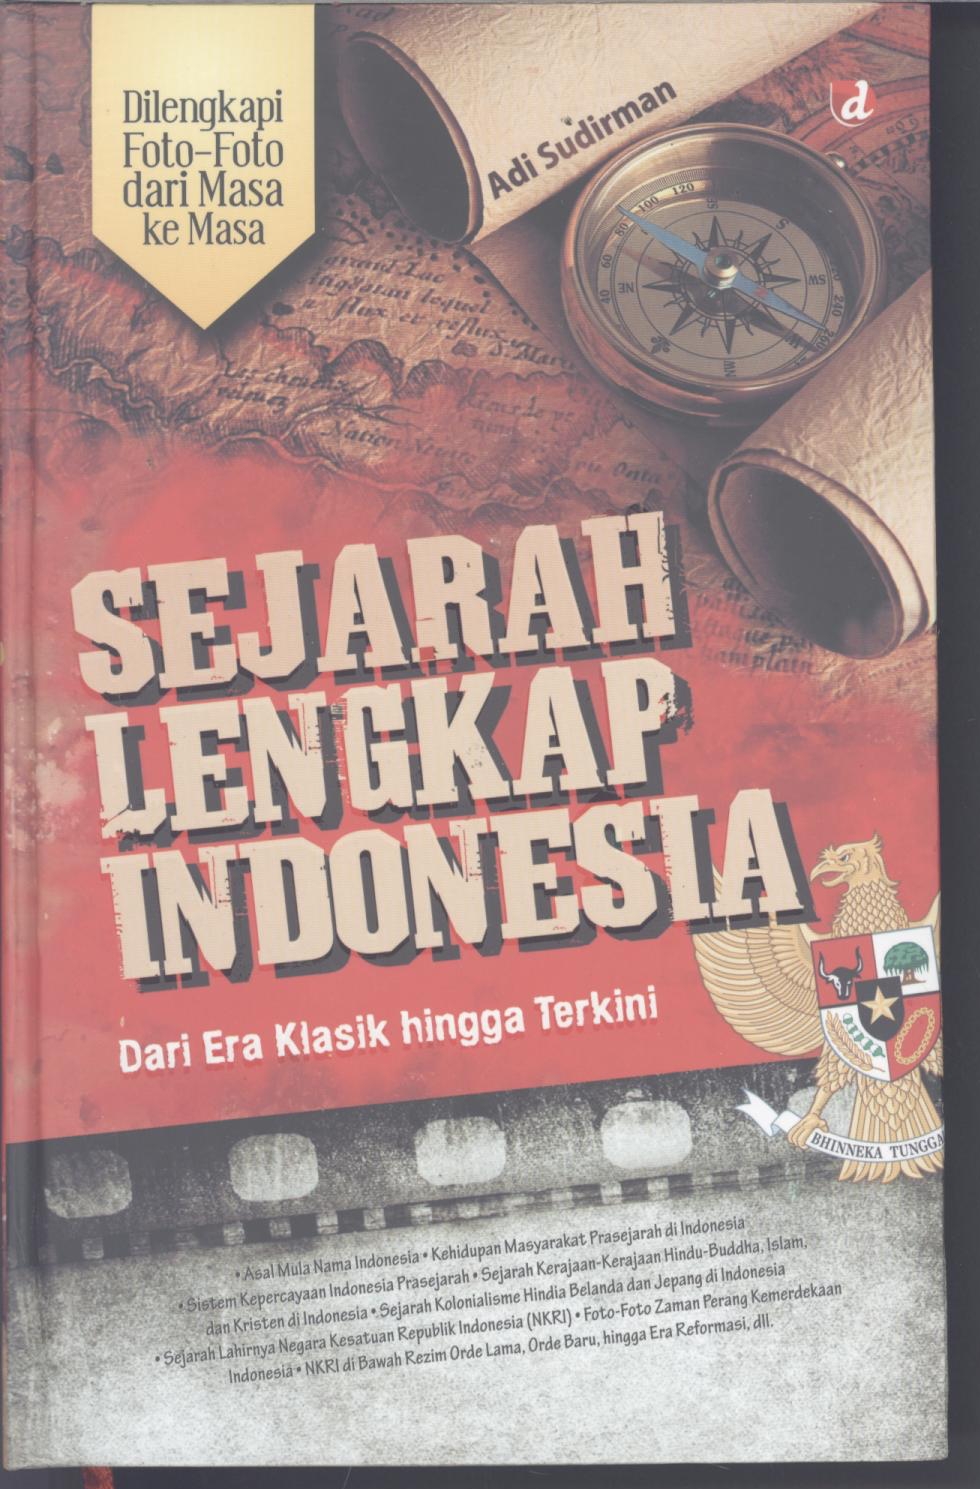 Sejarah lengkap Indonesia